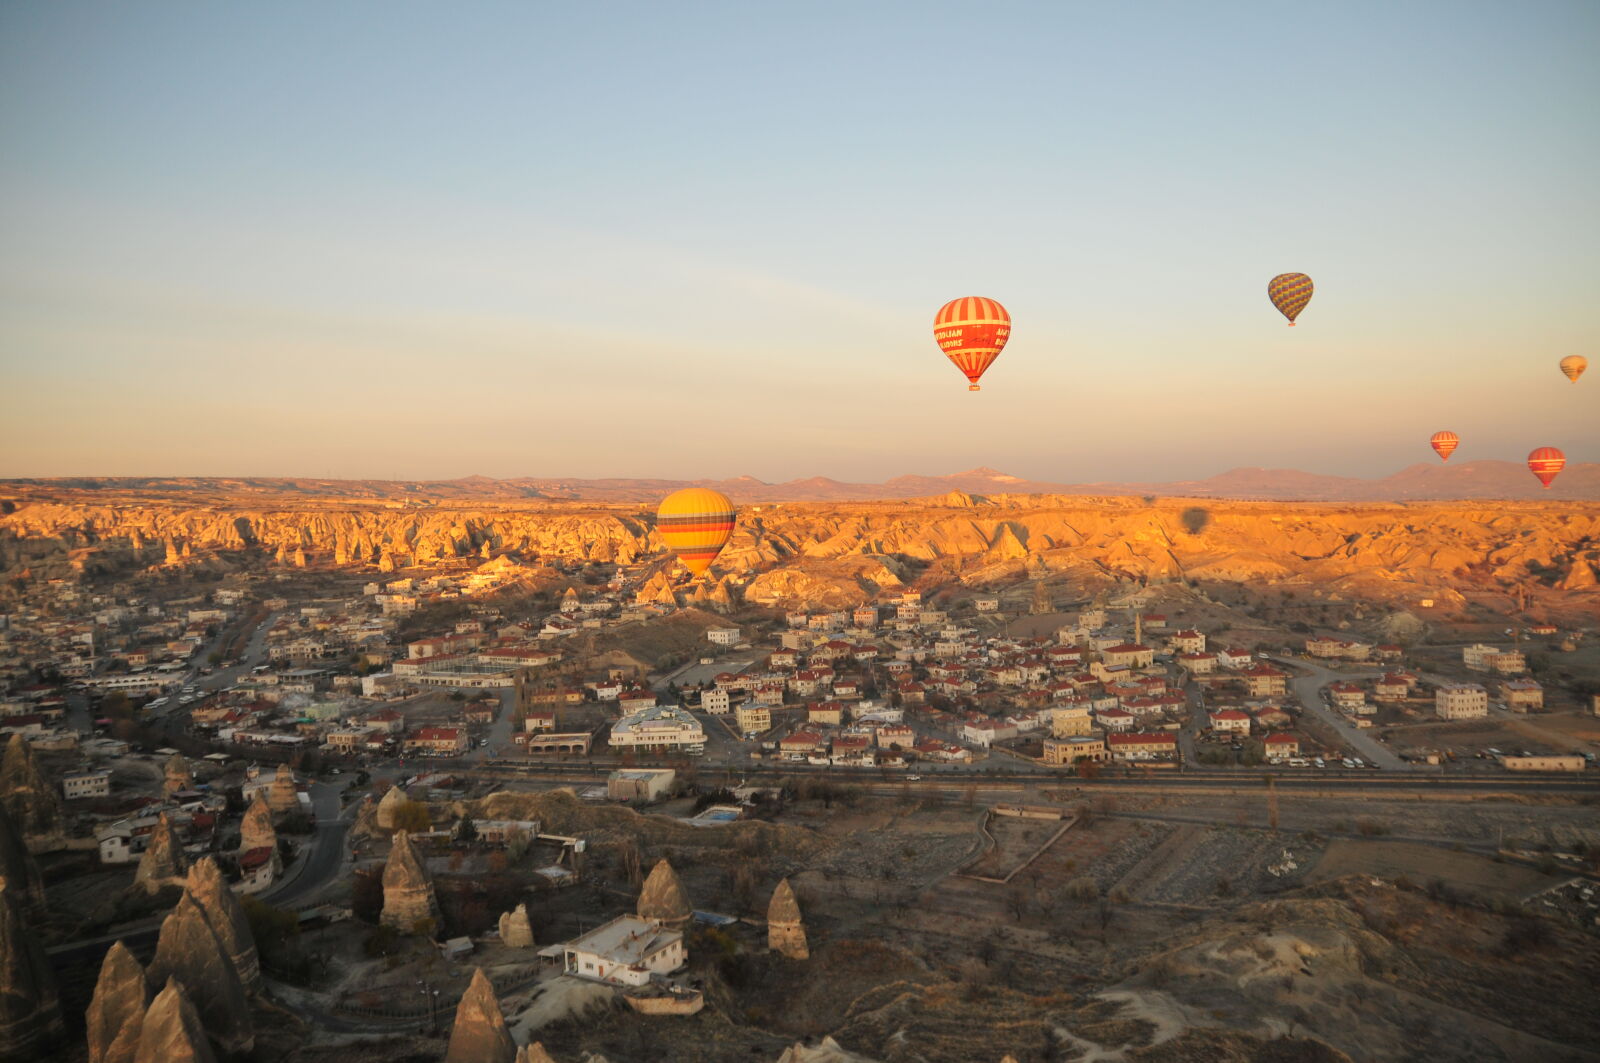 Nikon D300 + Sigma 18-50mm F2.8 EX DC Macro sample photo. Balloon, canon, cappadocia, city photography